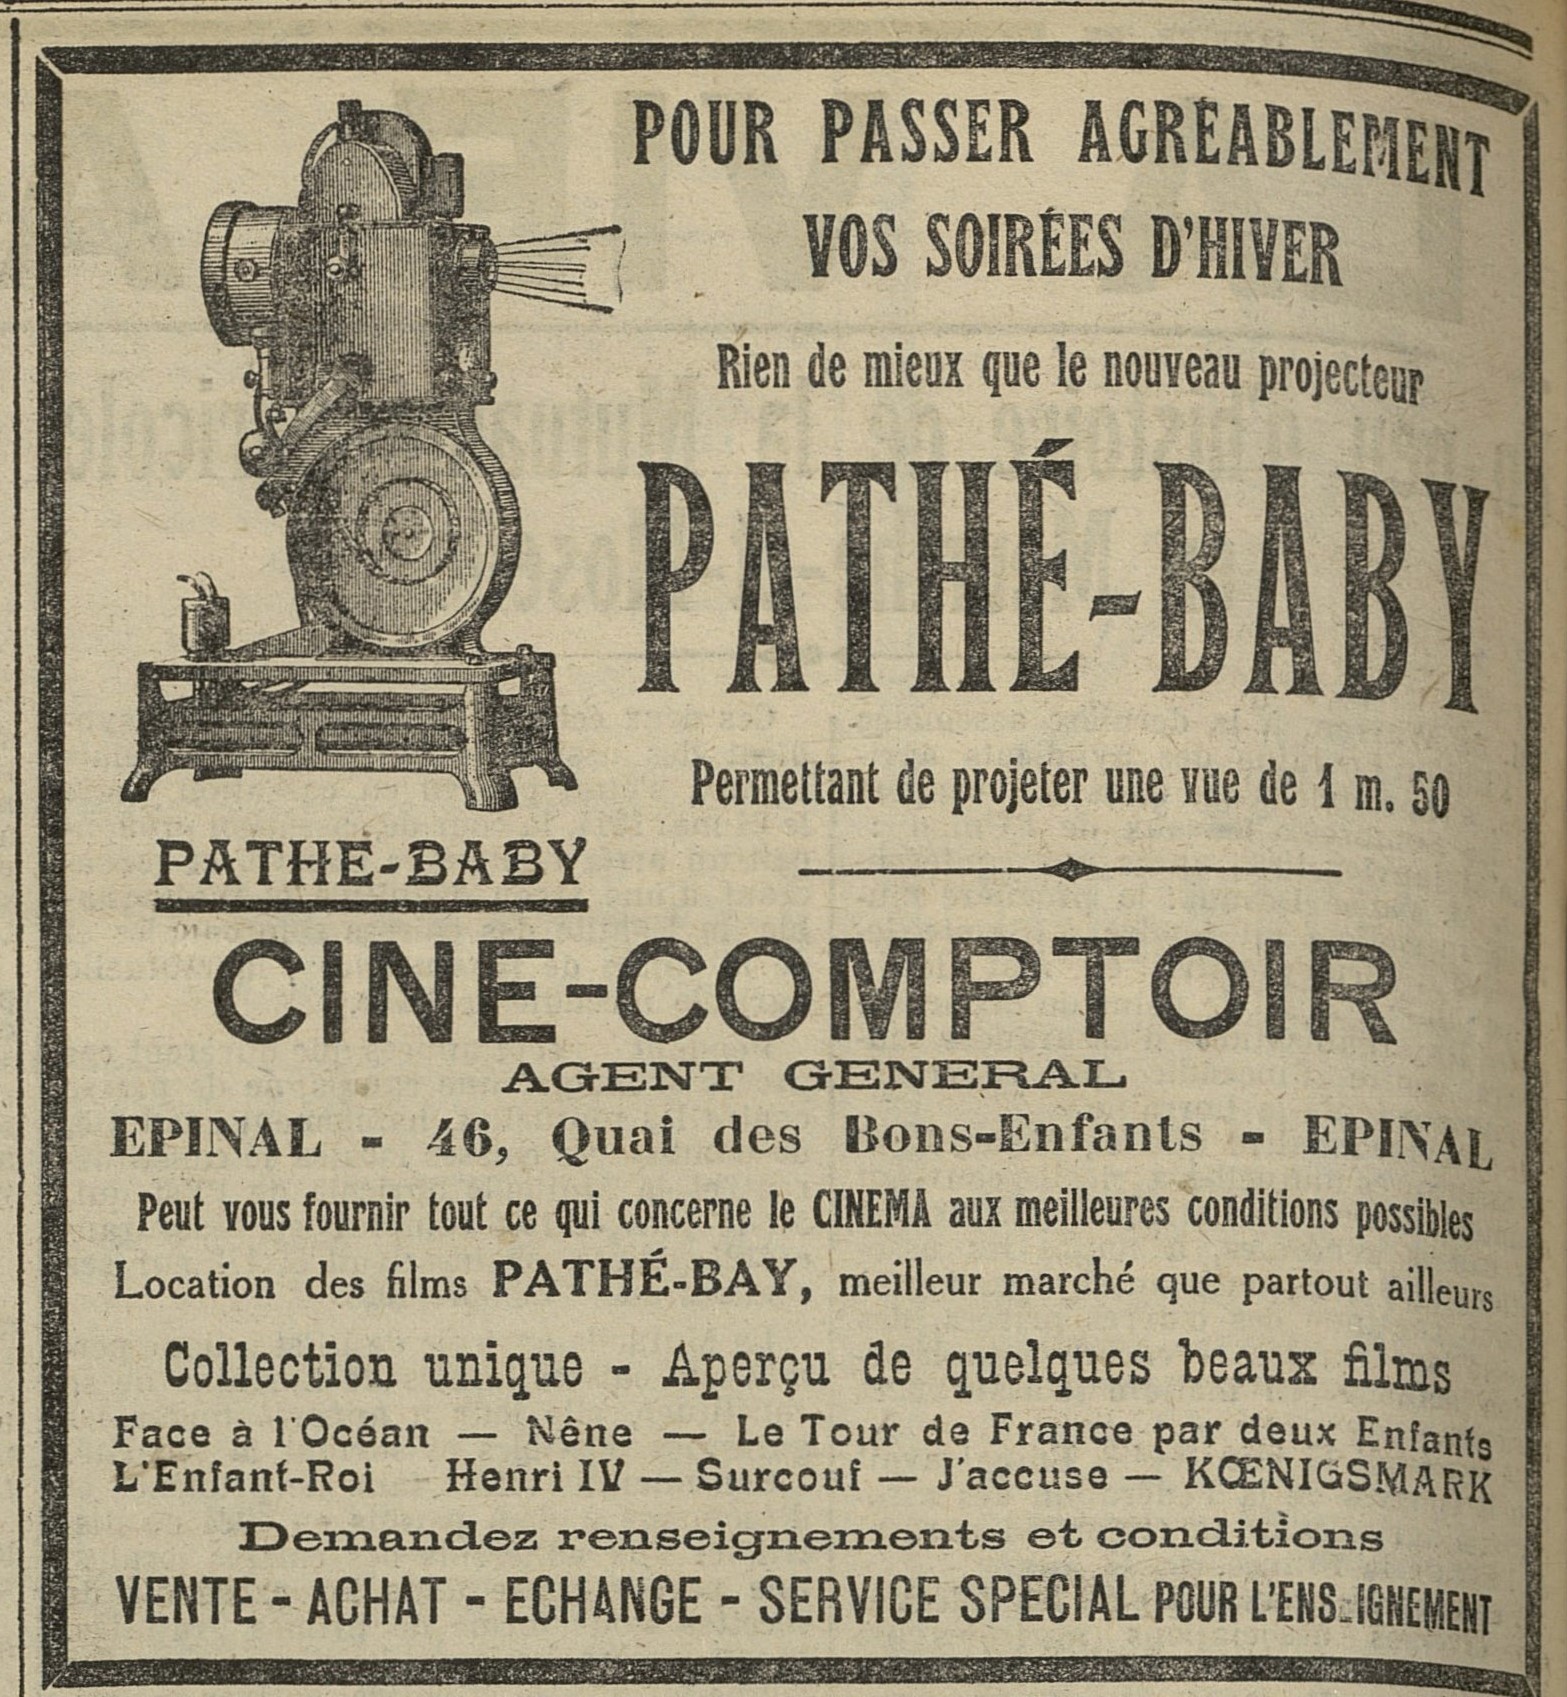 Contenu du Projecteur Pathé-Baby